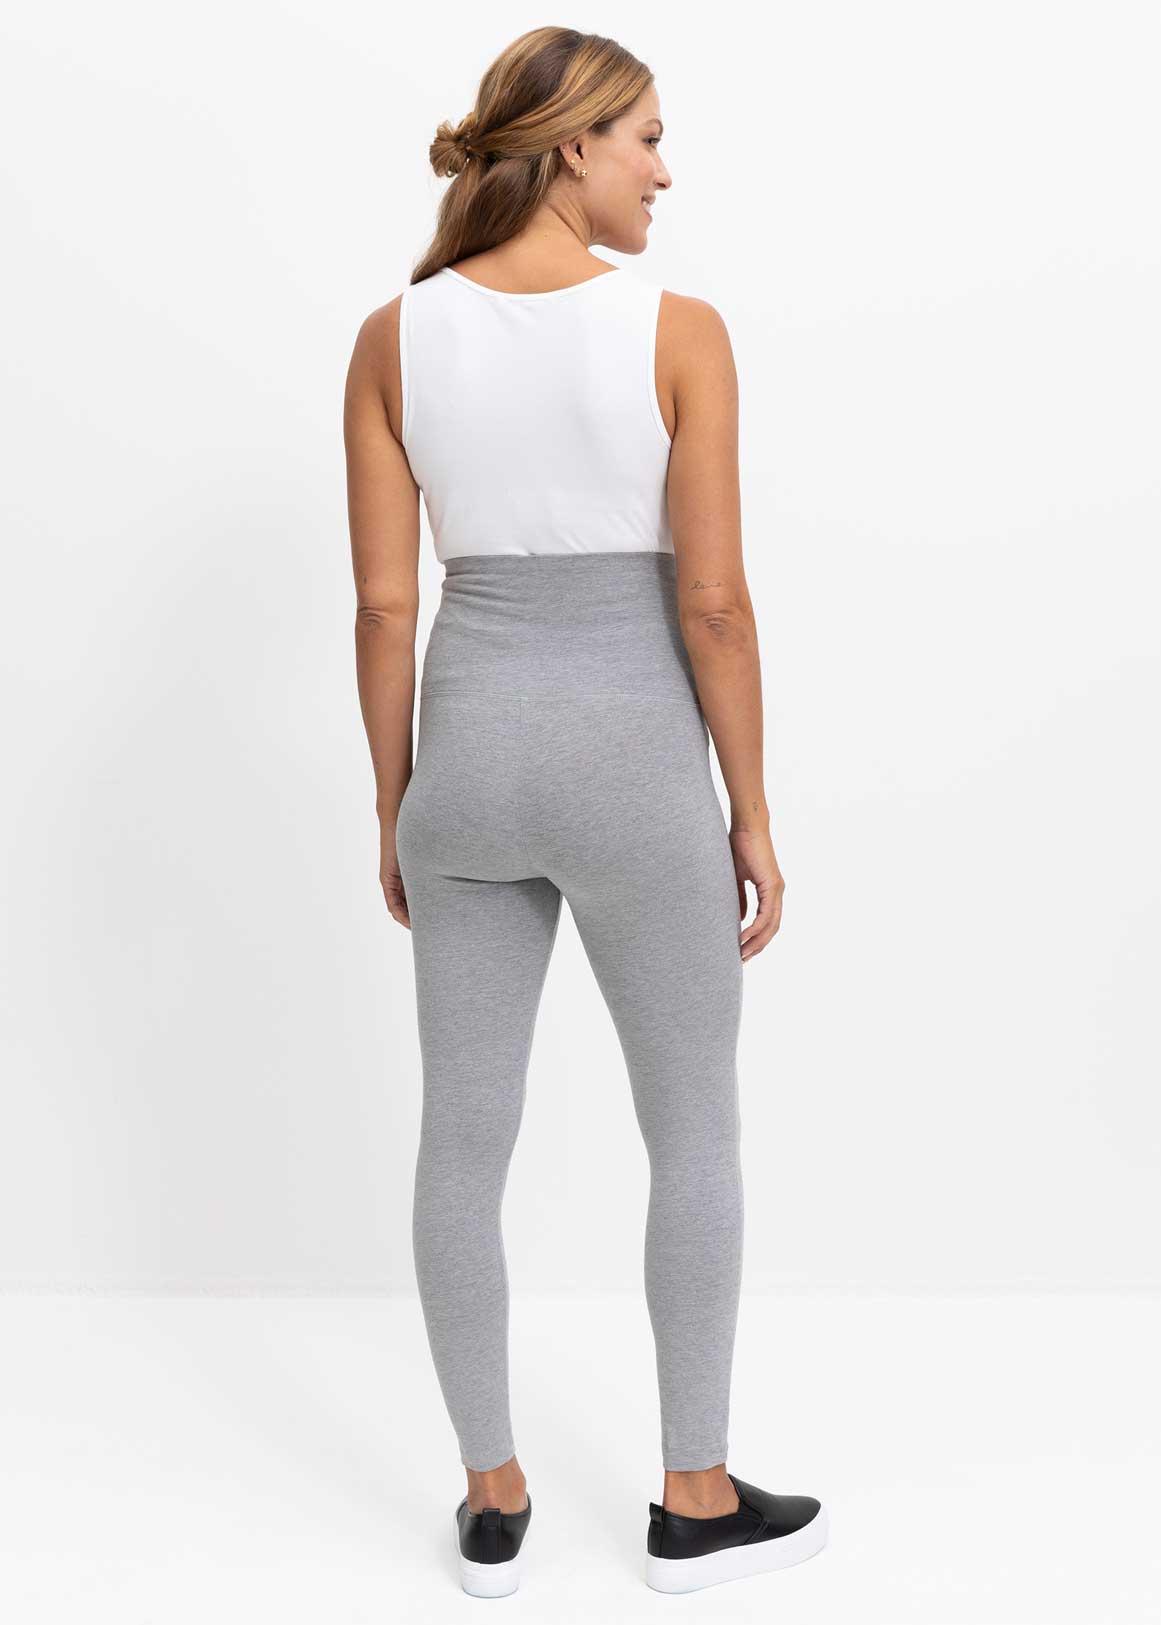 Mini Market - Ladies thermal leggings Brand - Esmara